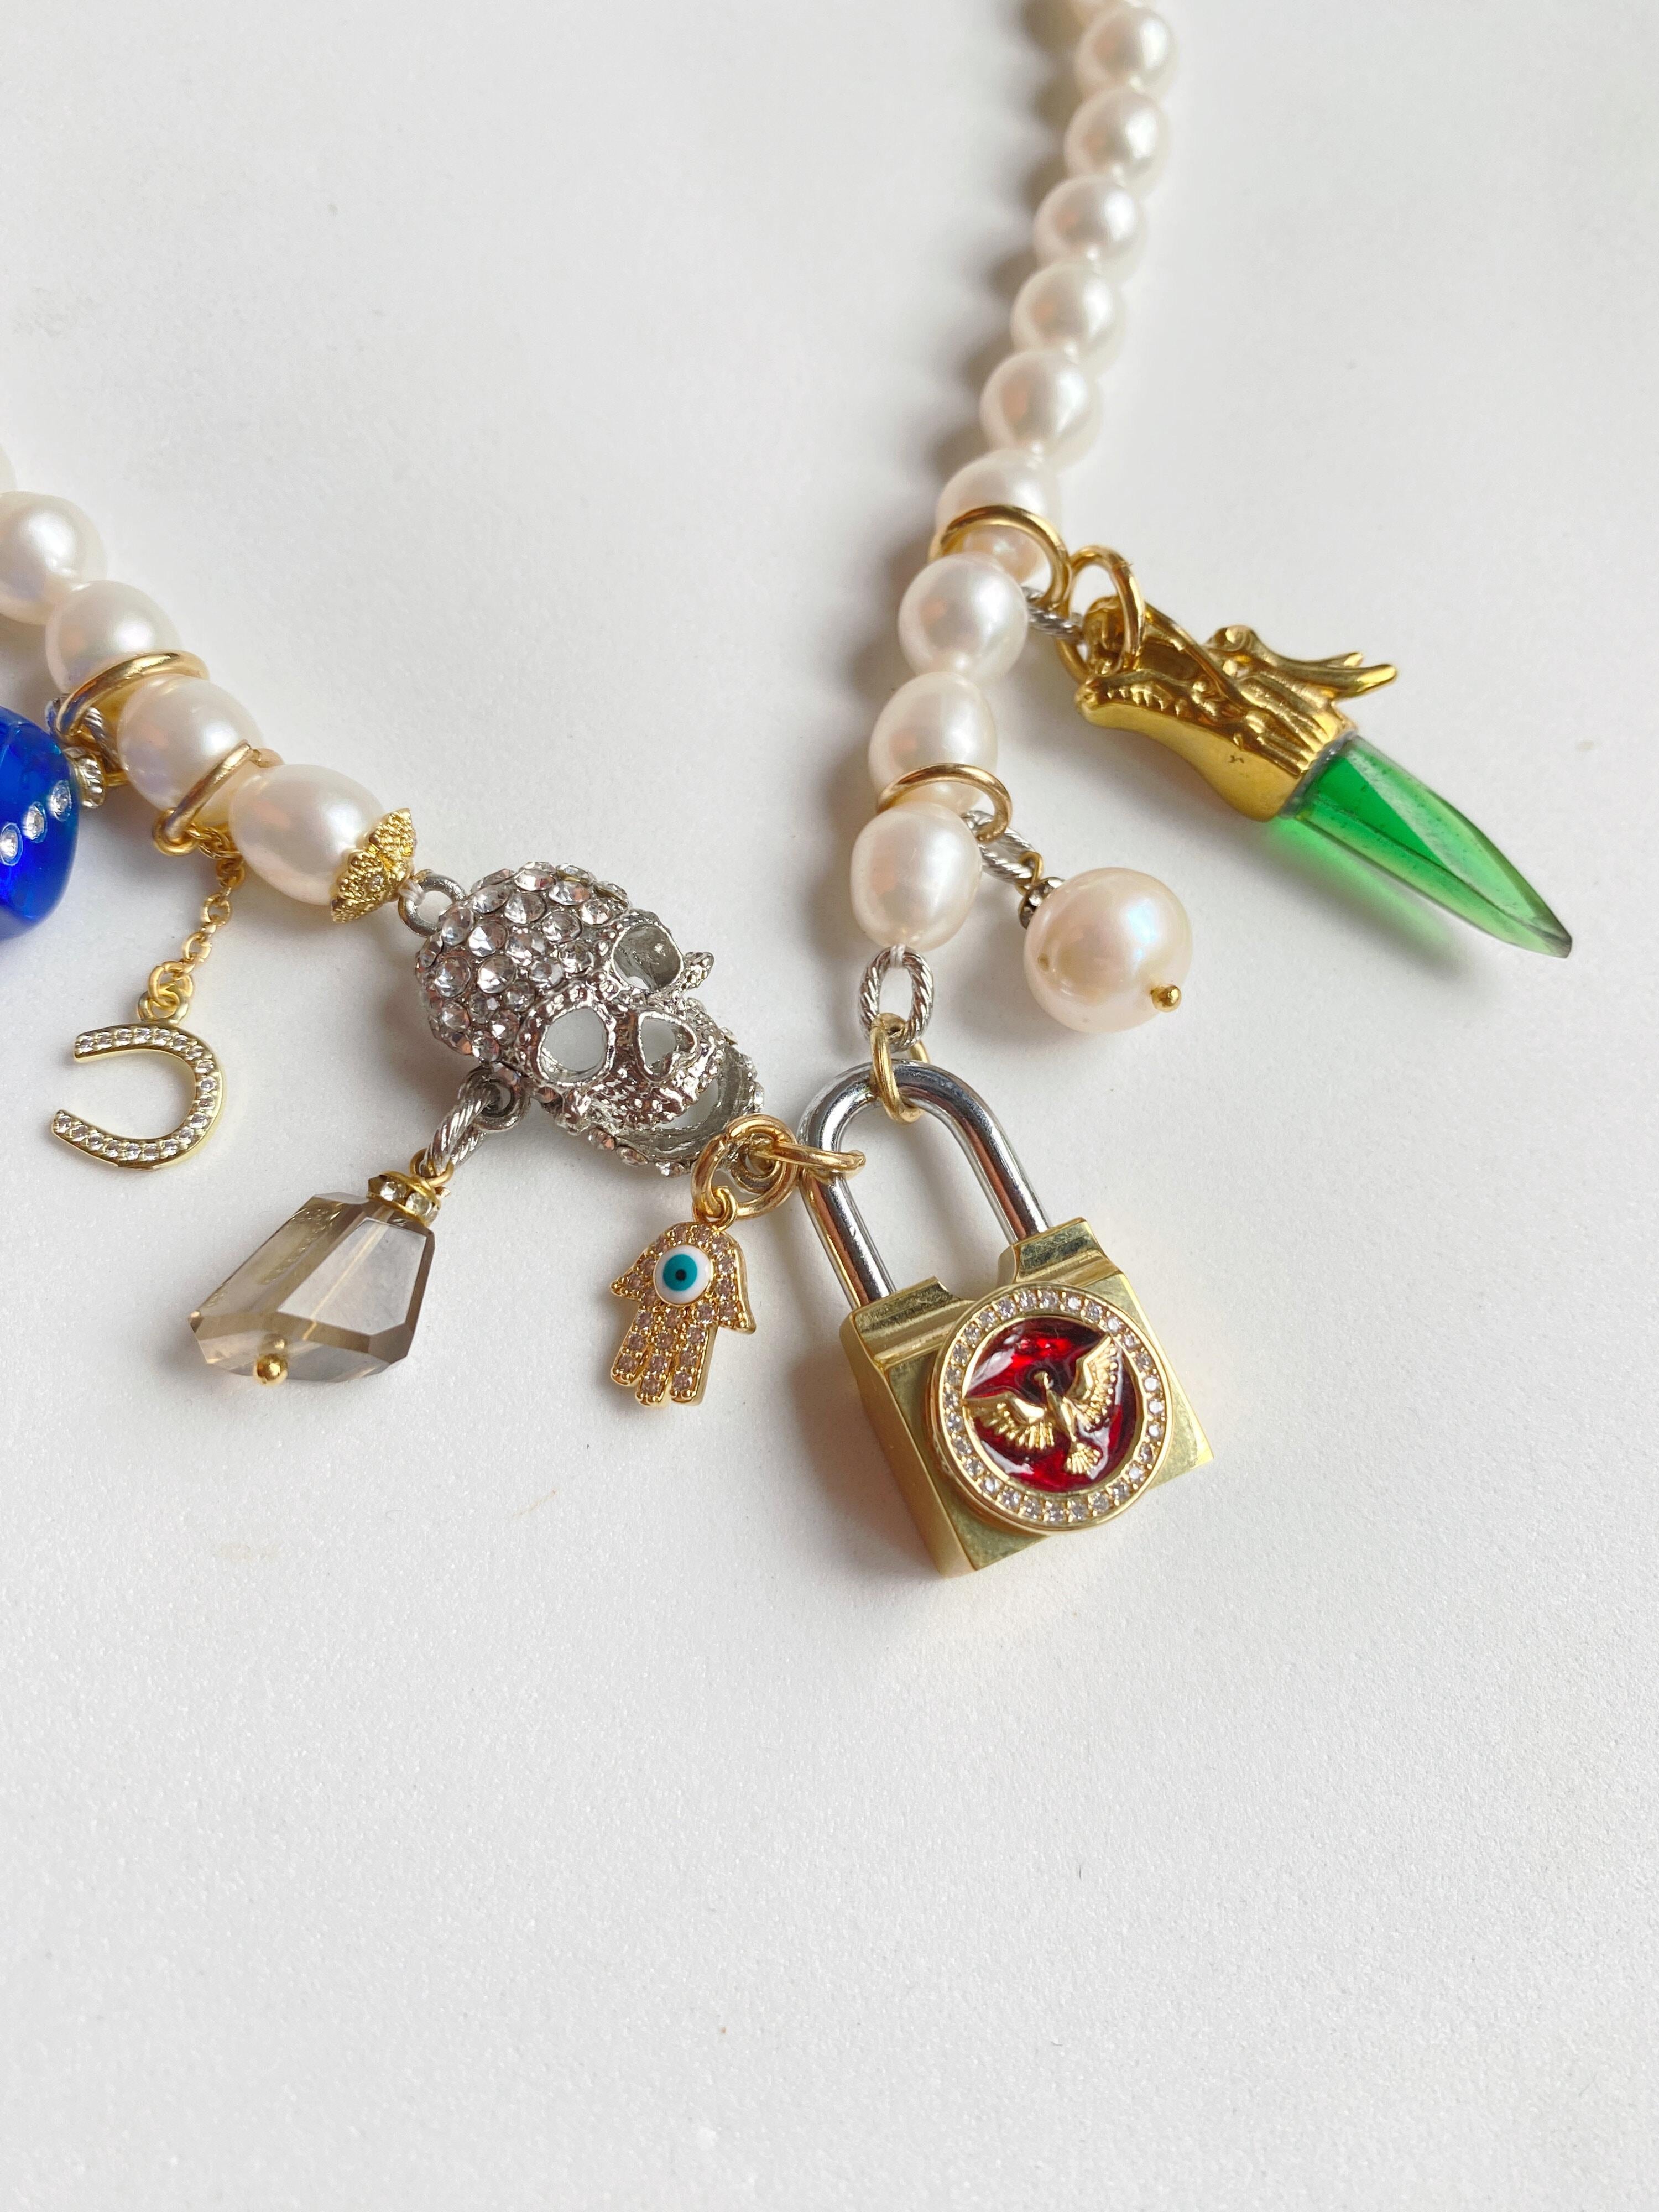 Ces colliers de perles et de cadenas sont tous fabriqués sur mesure, ce qui rend chacun d'entre eux totalement unique. Vous pouvez personnaliser de la perle blanche à la perle noire, chaque verrou rempli d'or est gravé avec les initiales du